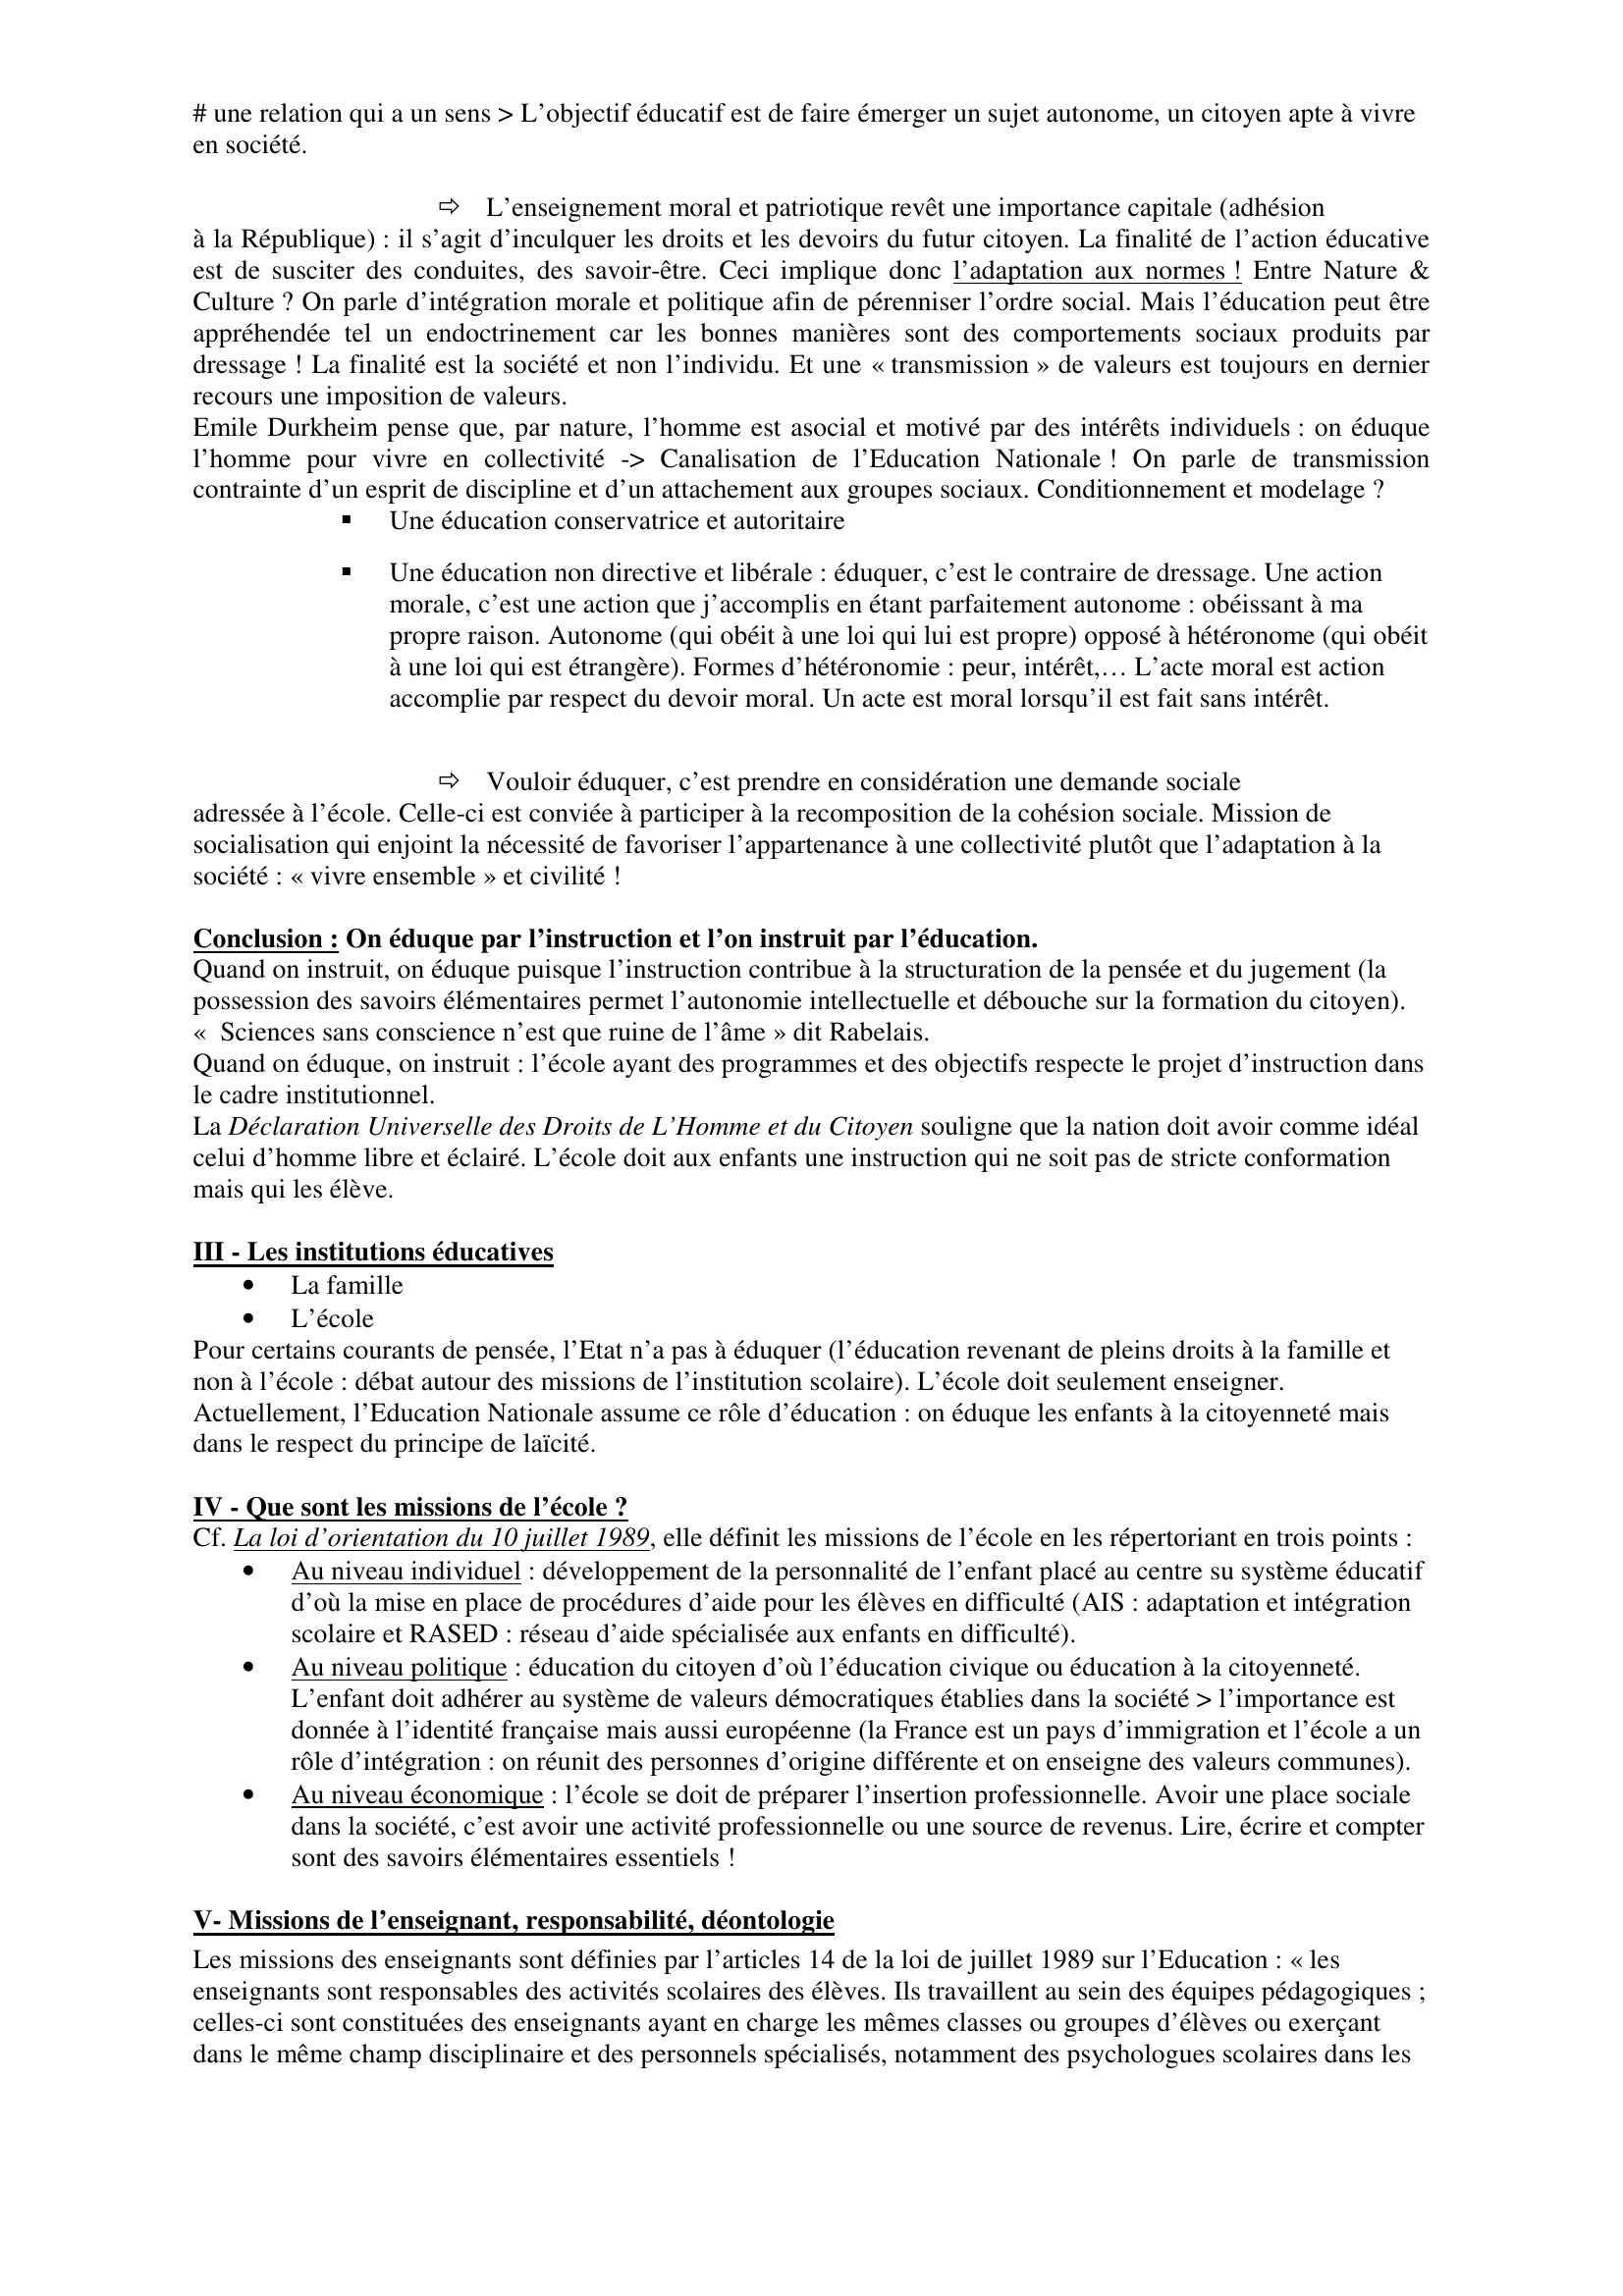 Prévisualisation du document LES MISSIONS DE L 'ECOLE

Synthèse construite par Sylvain
sylvain.